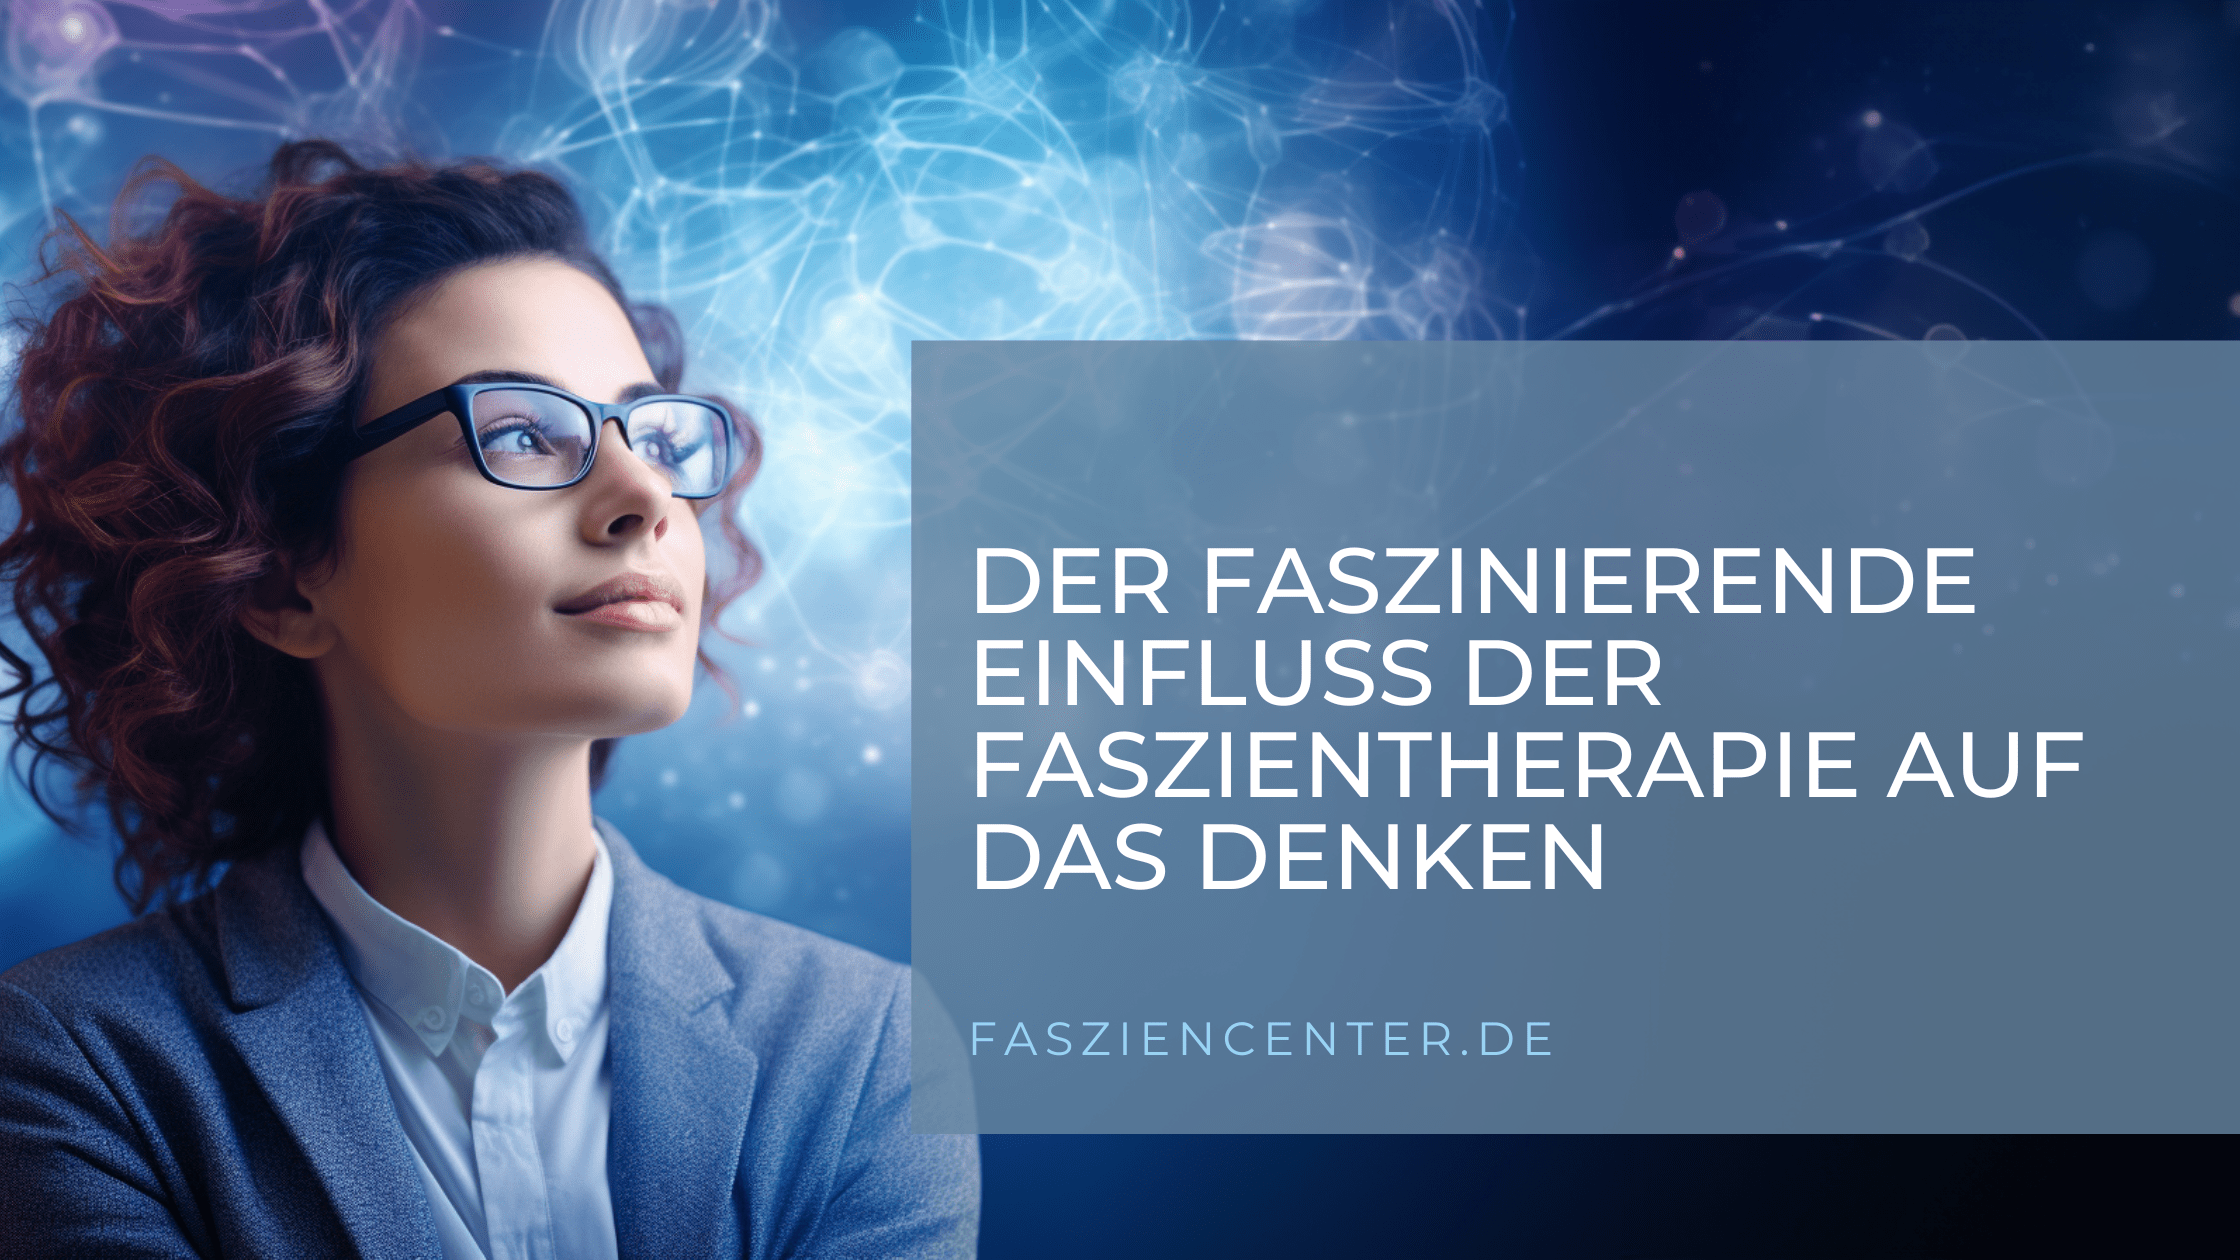 Nachdenkliche Frau umgeben von blauen Neuronen-ähnlichen Strukturen mit Text über den Einfluss der Faszientherapie auf das Denken.